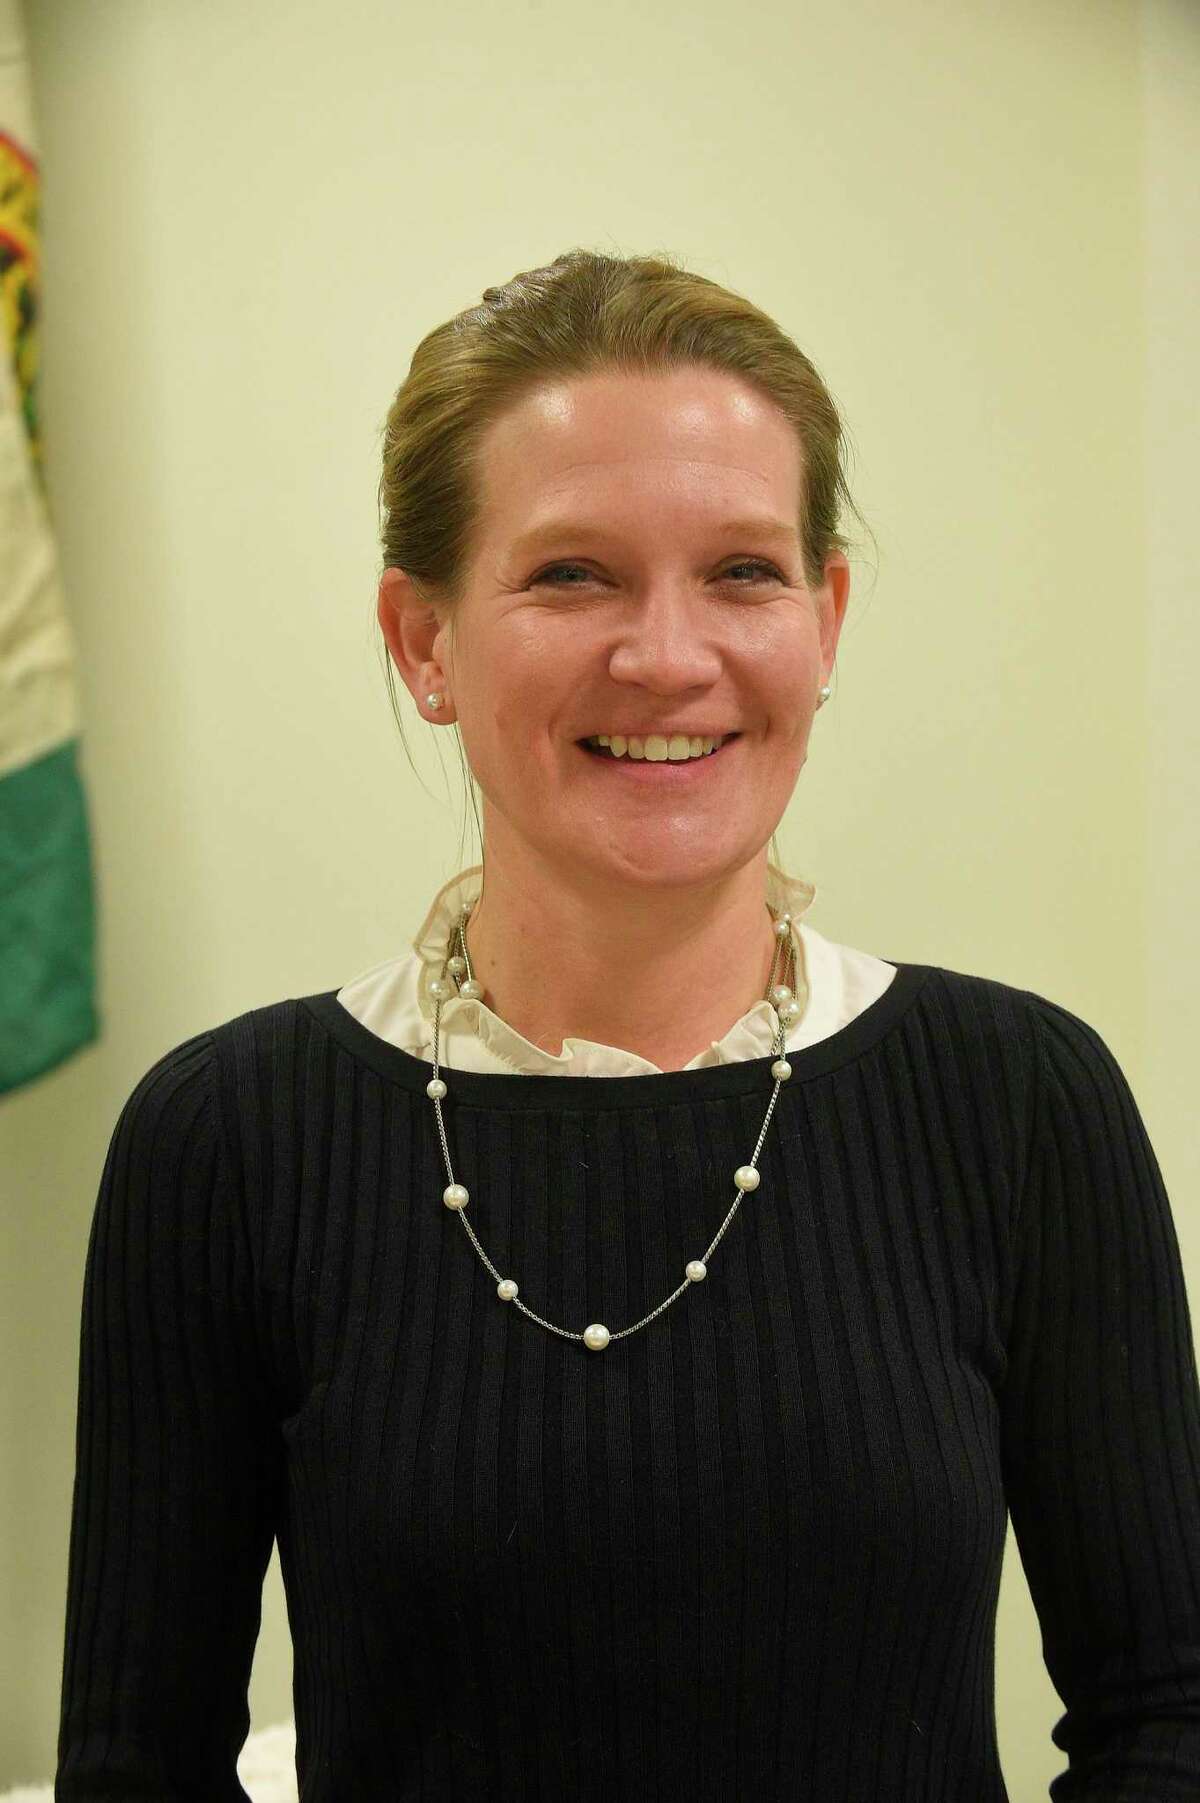 Karen Kowalski, a member of the Greenwich Board of Education Nov. 21, 2019.